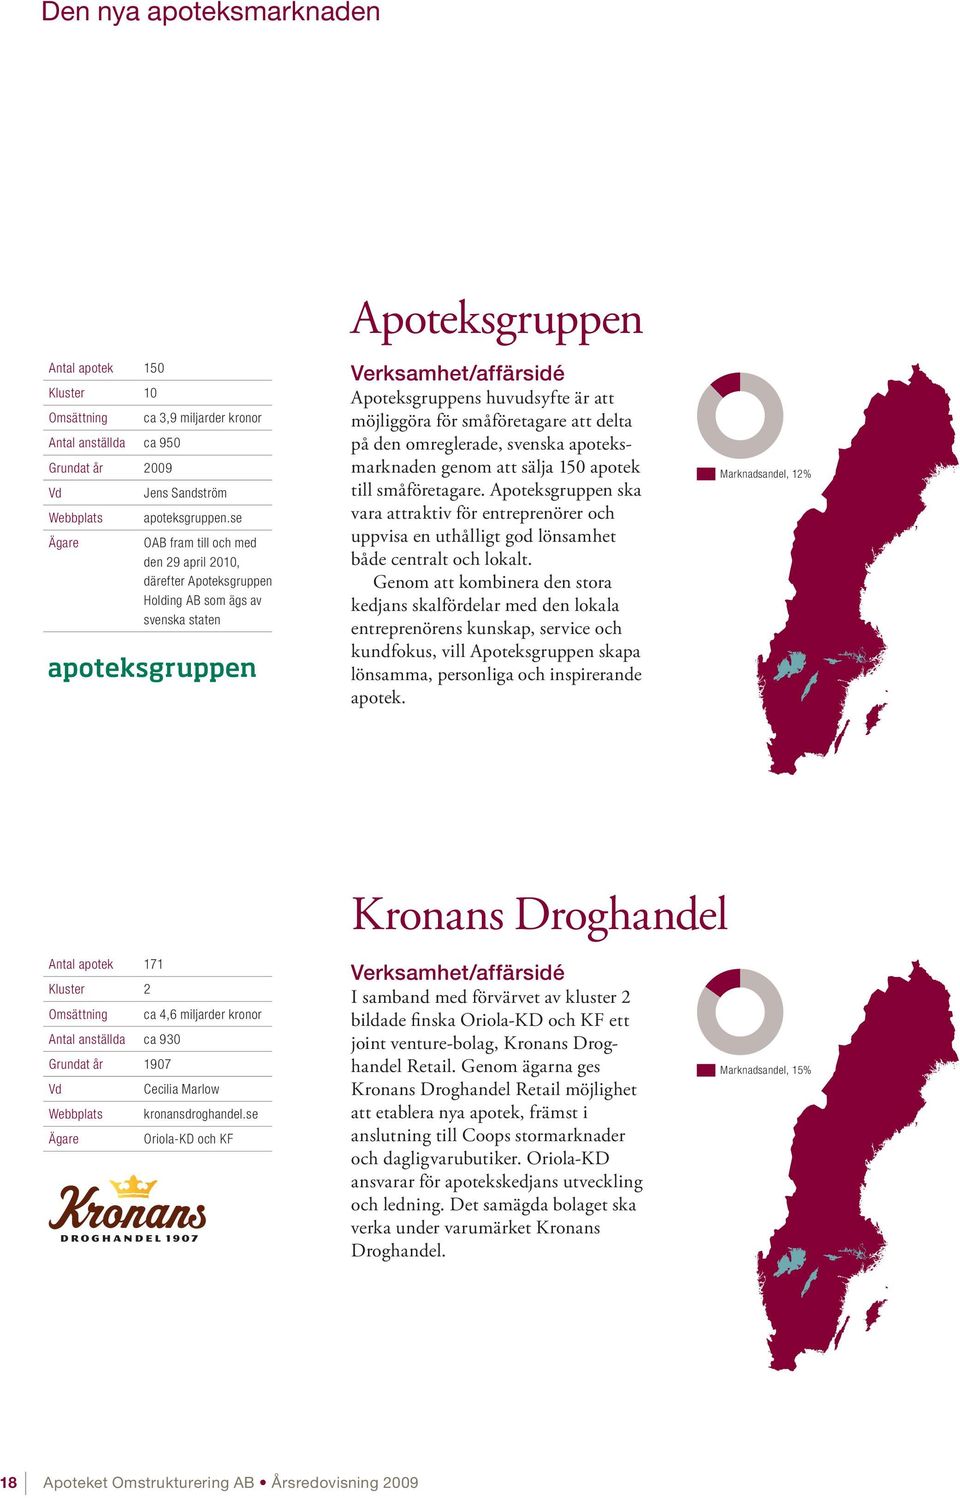 på den omreglerade, svenska apoteksmarknaden genom att sälja 150 apotek till småföretagare.